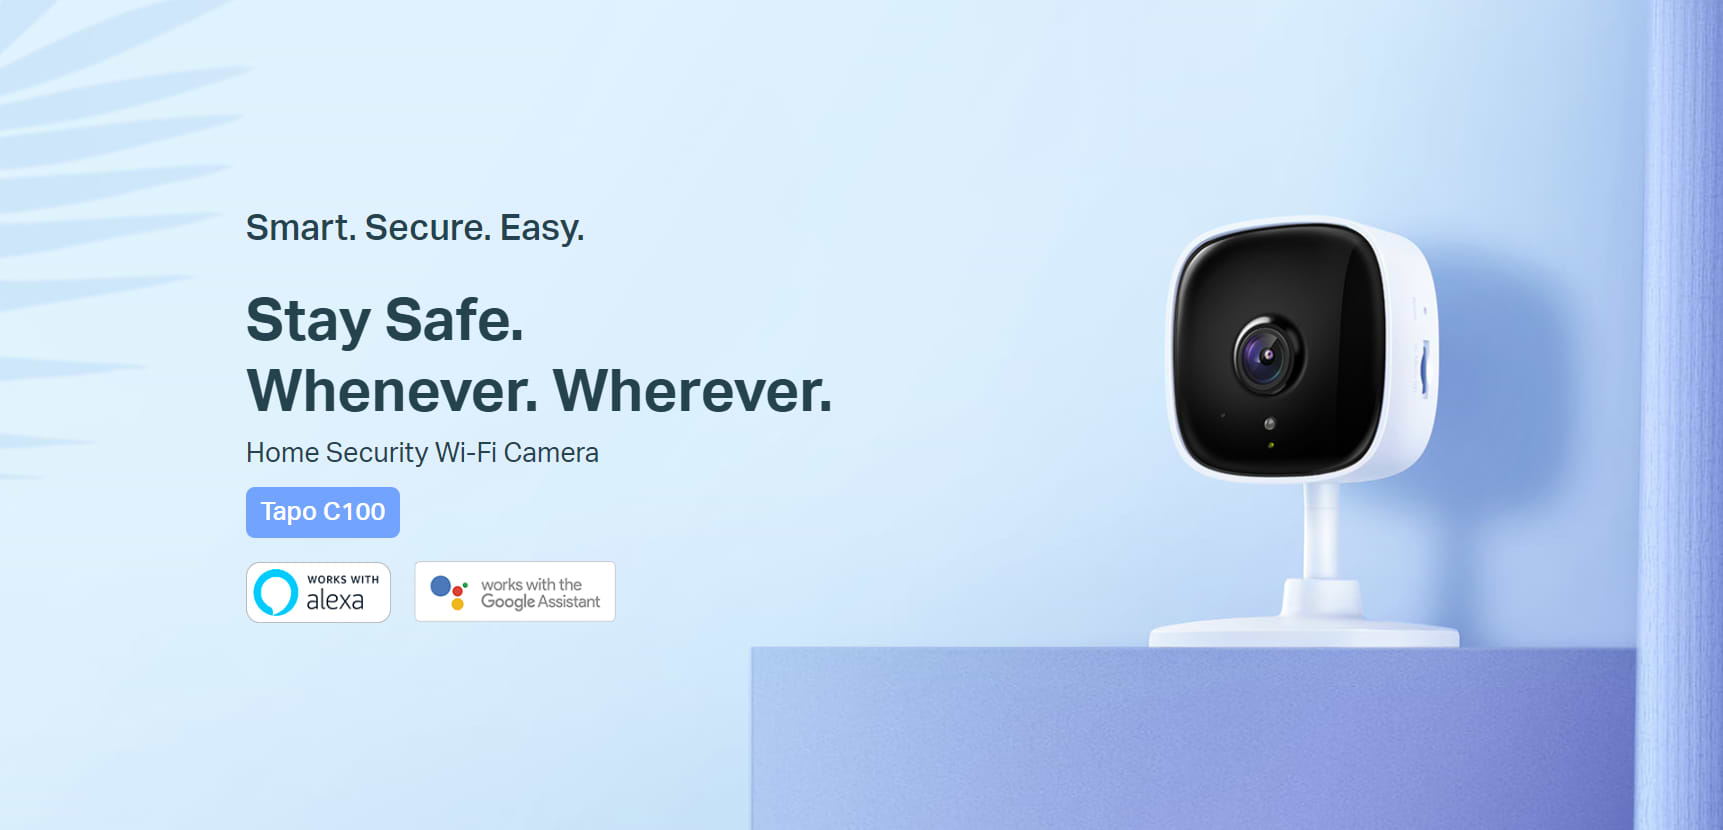 מצלמת אבטחה TP-Link Tapo C100 2MP Wi-Fi FHD 1080P Night Vision - צבע לבן שלוש שנות אחריות ע"י יבואן הרשמי